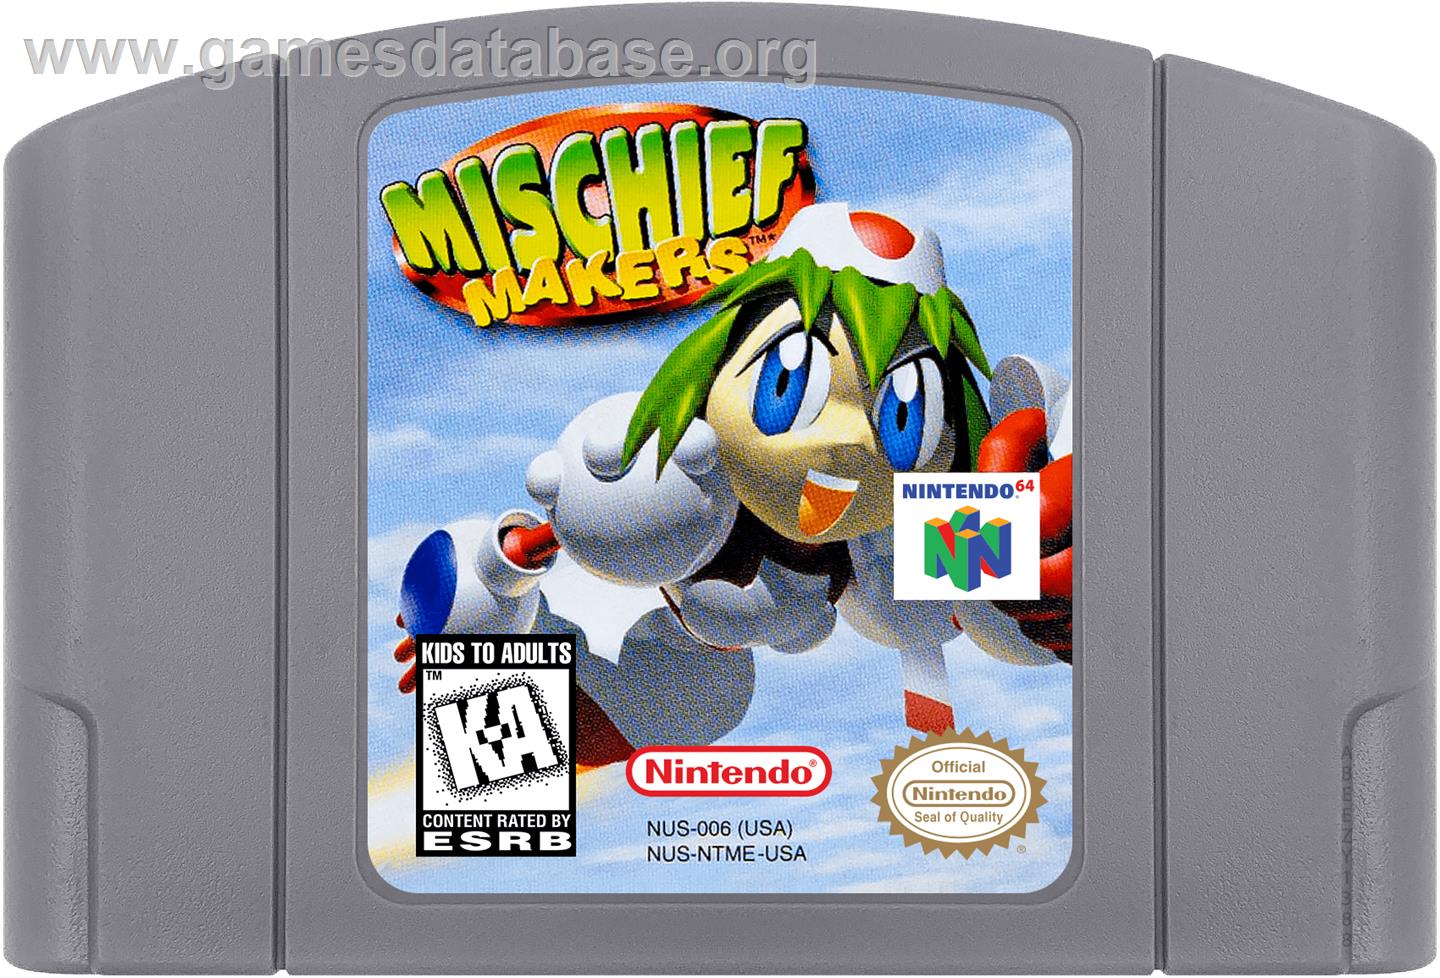 Mischief Makers - Nintendo N64 - Artwork - Cartridge